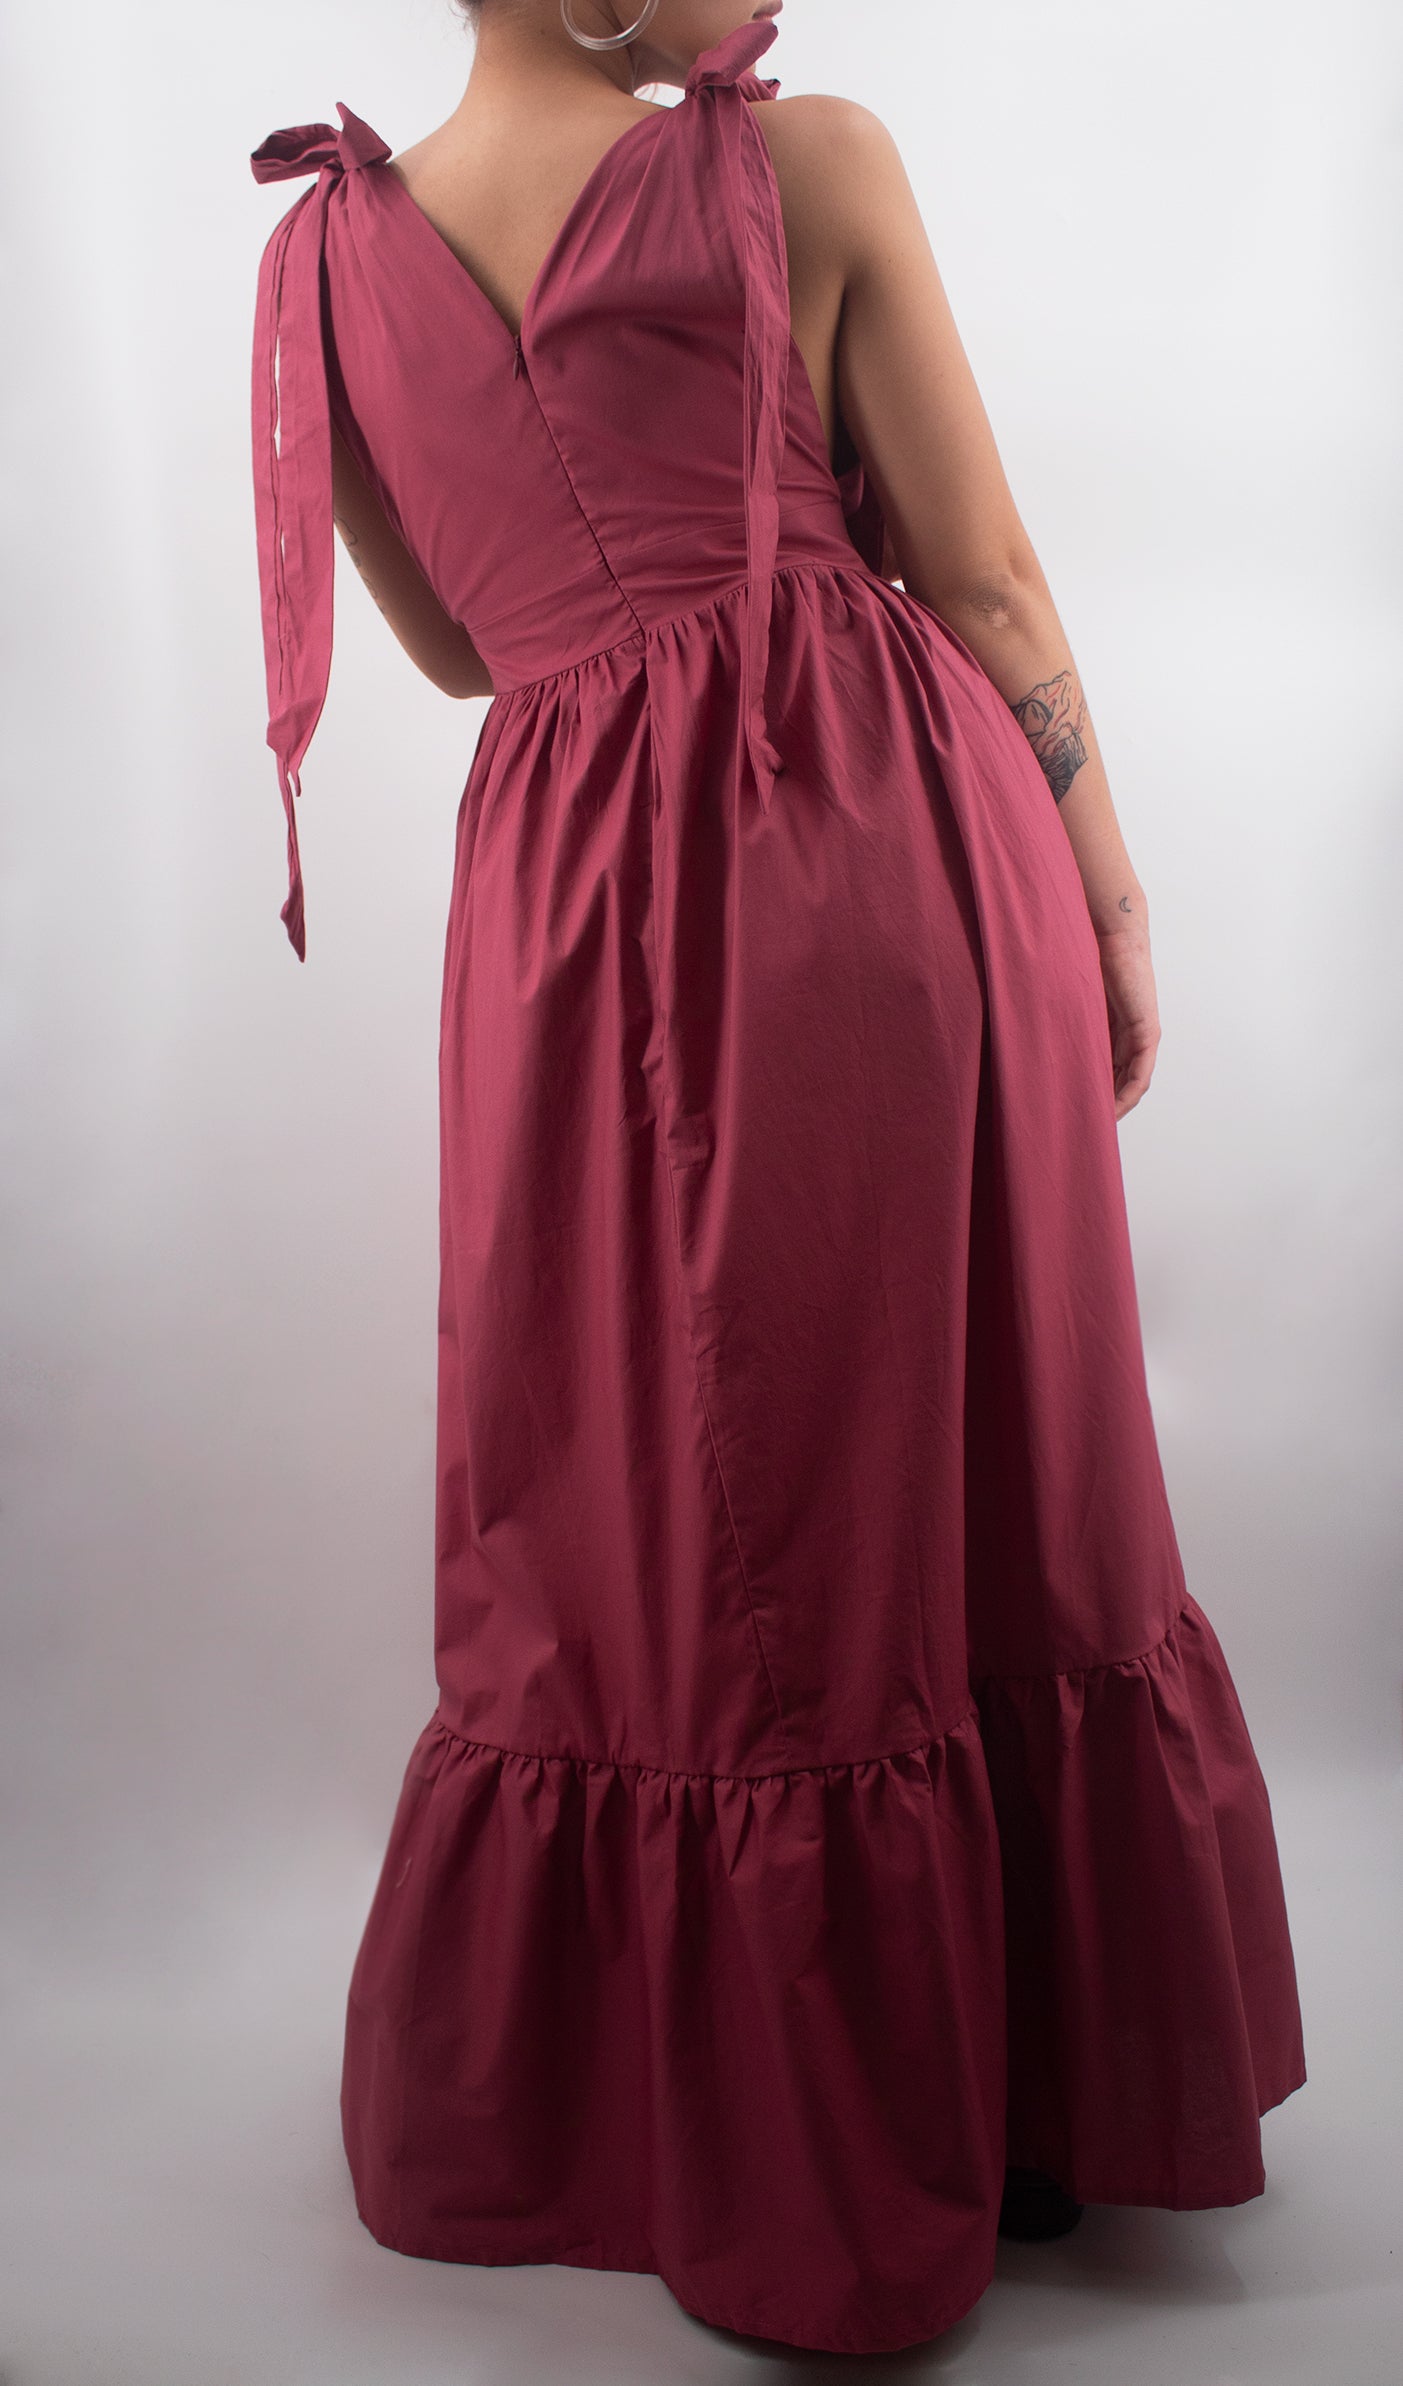 Sabana Rosa Dress